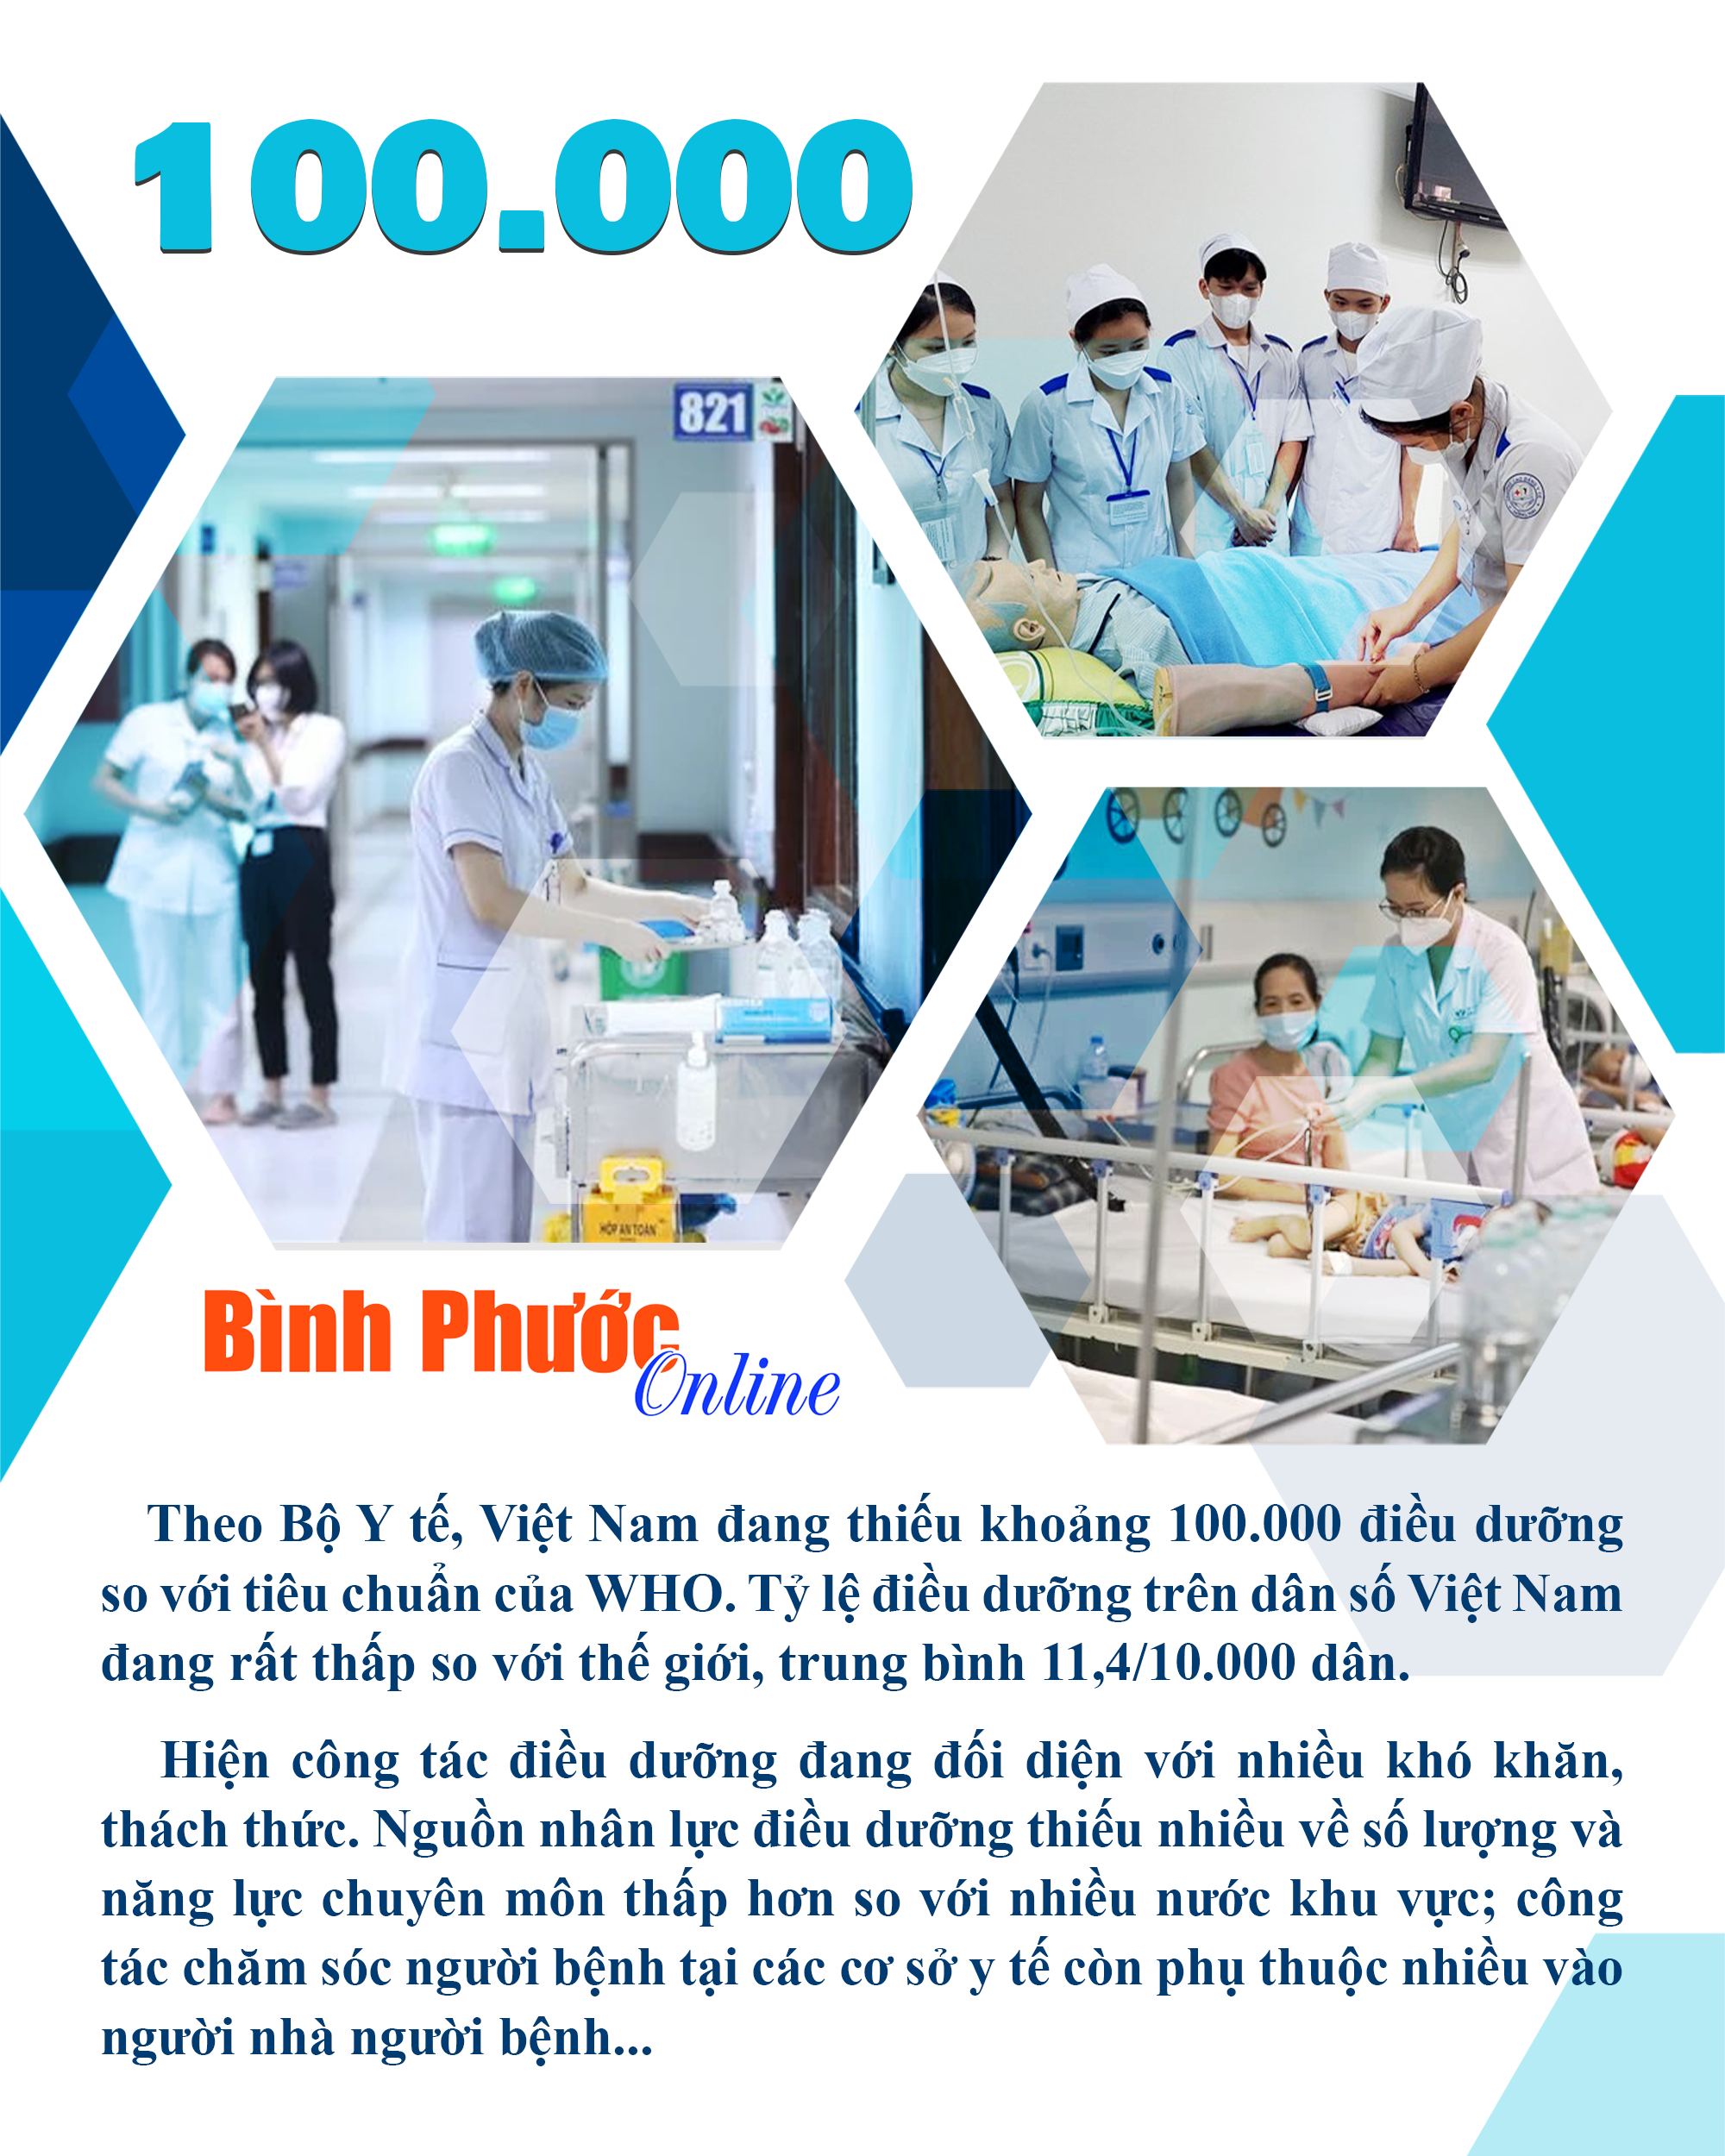 Thiếu hụt nhân lực điều dưỡng tại Việt Nam